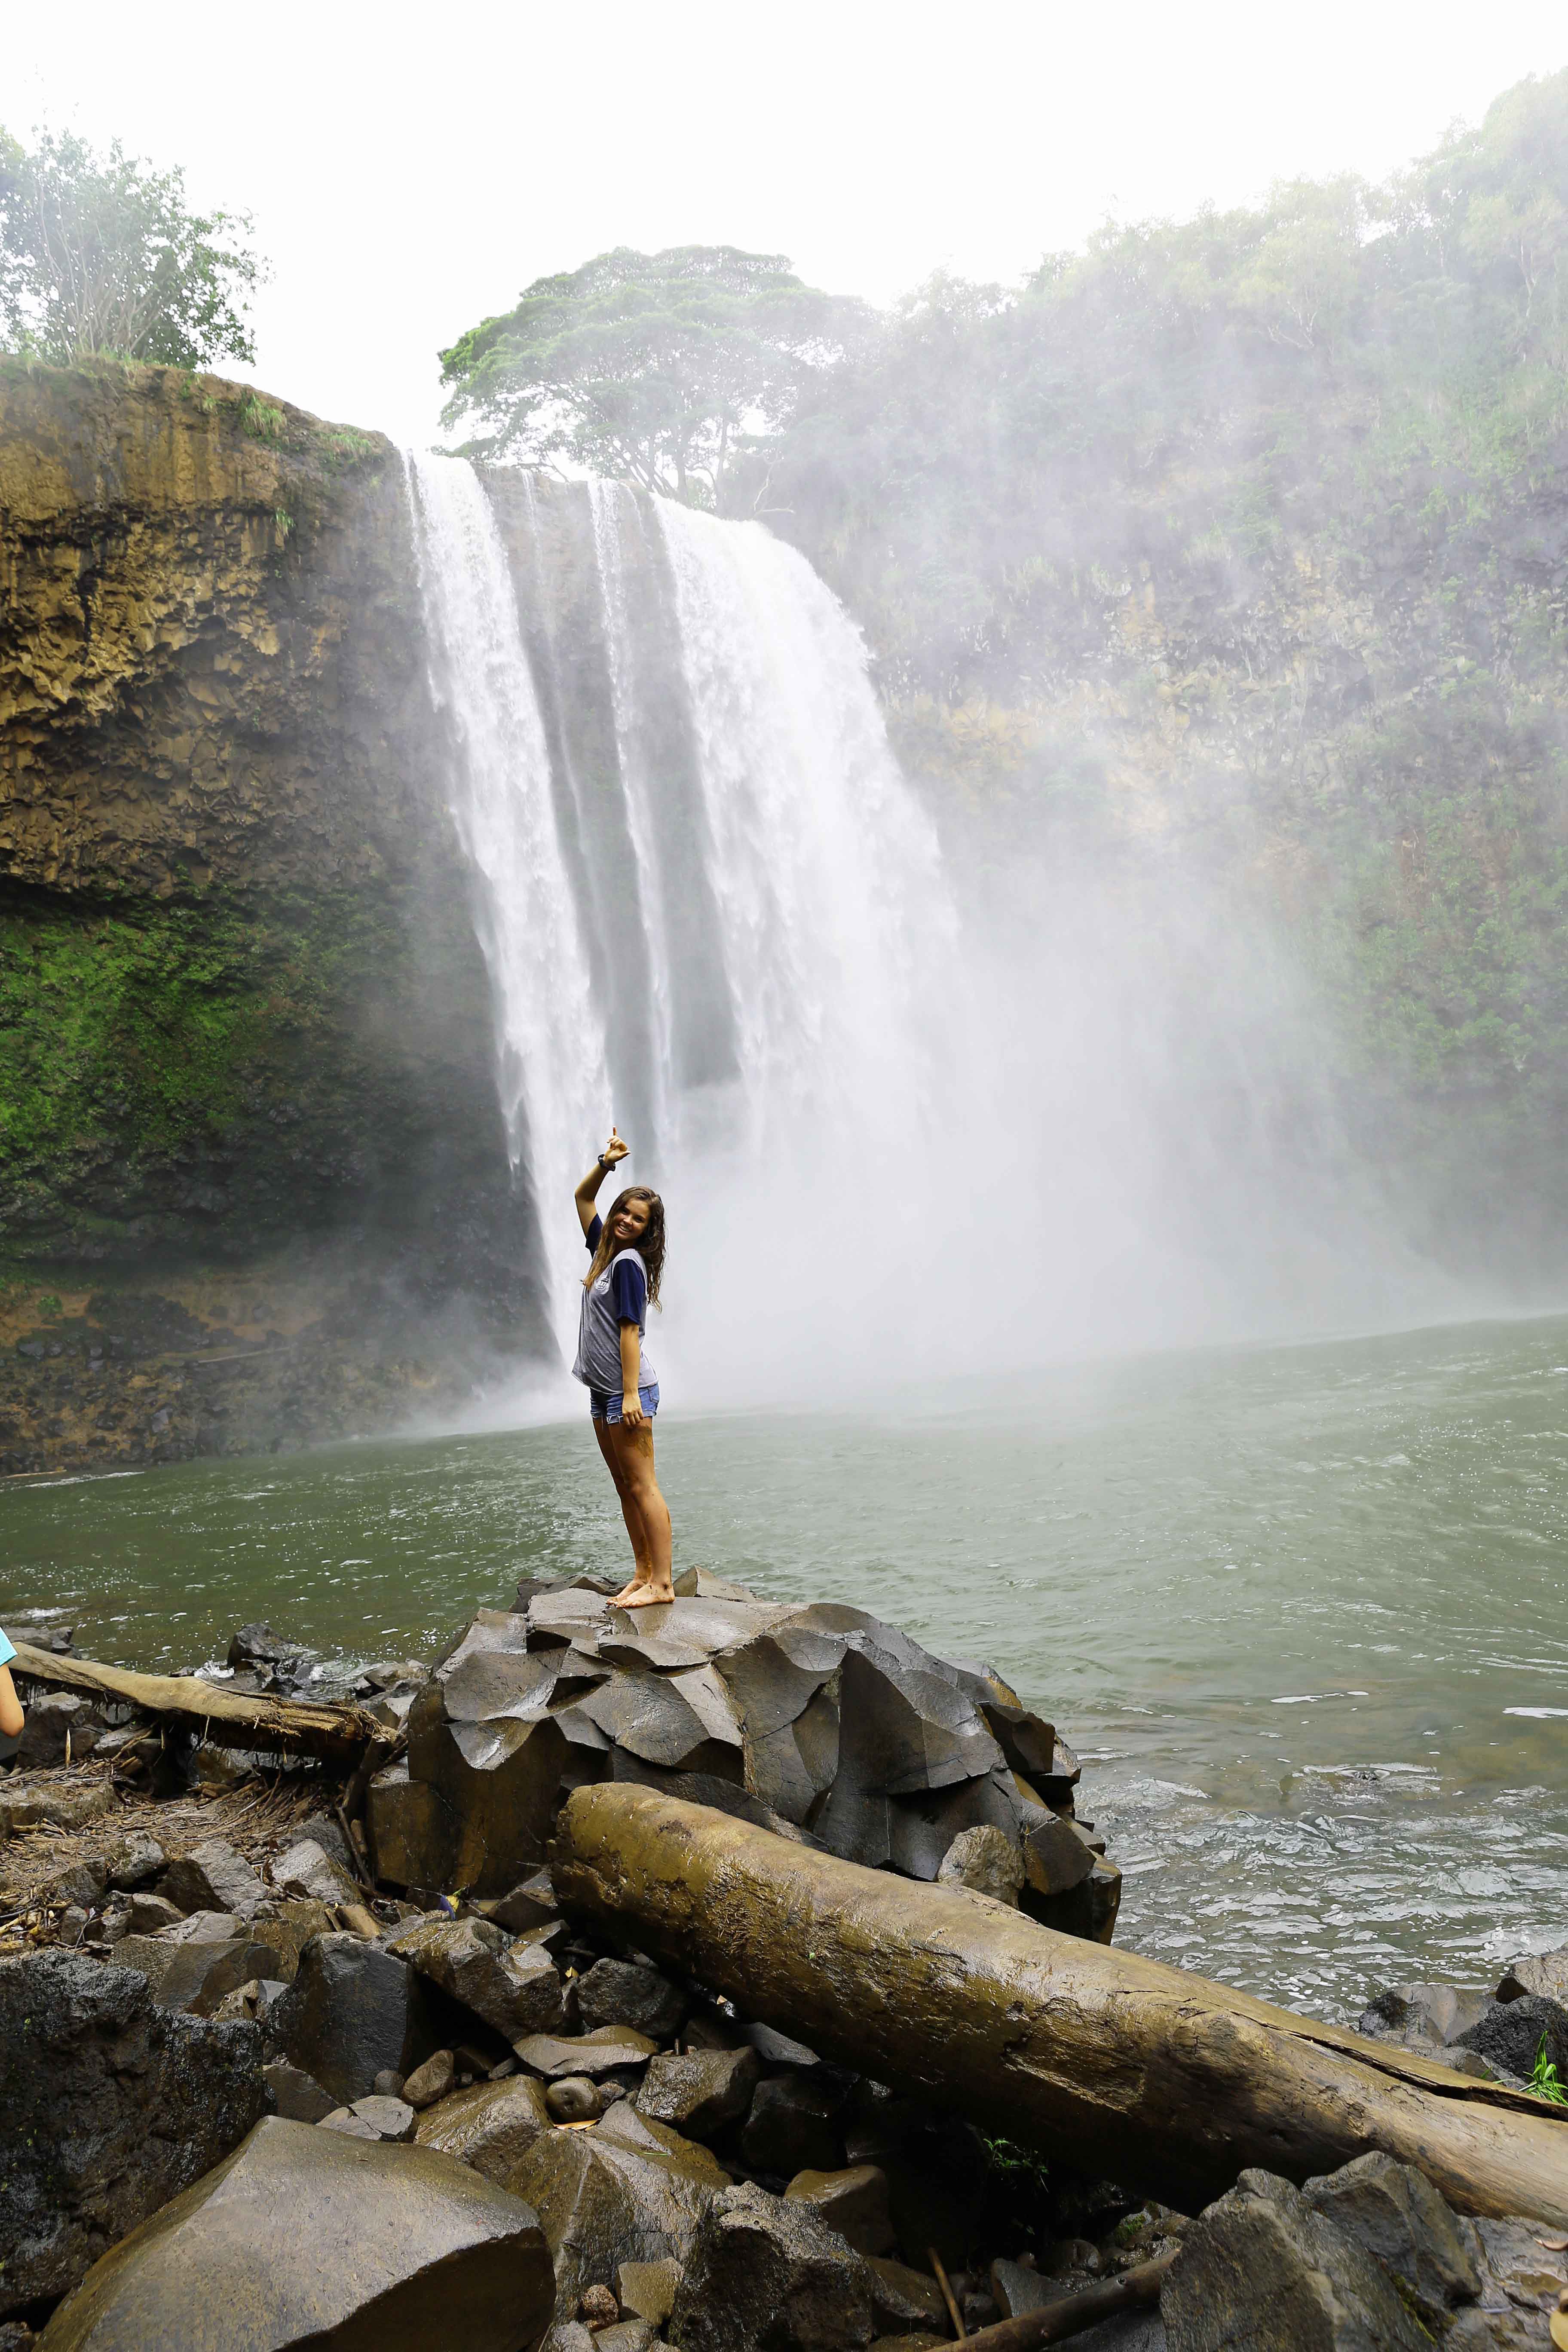 Kauai Hawaii Travel Guide. Hiking and Swimming in Wailua Falls Kauai Hawaii